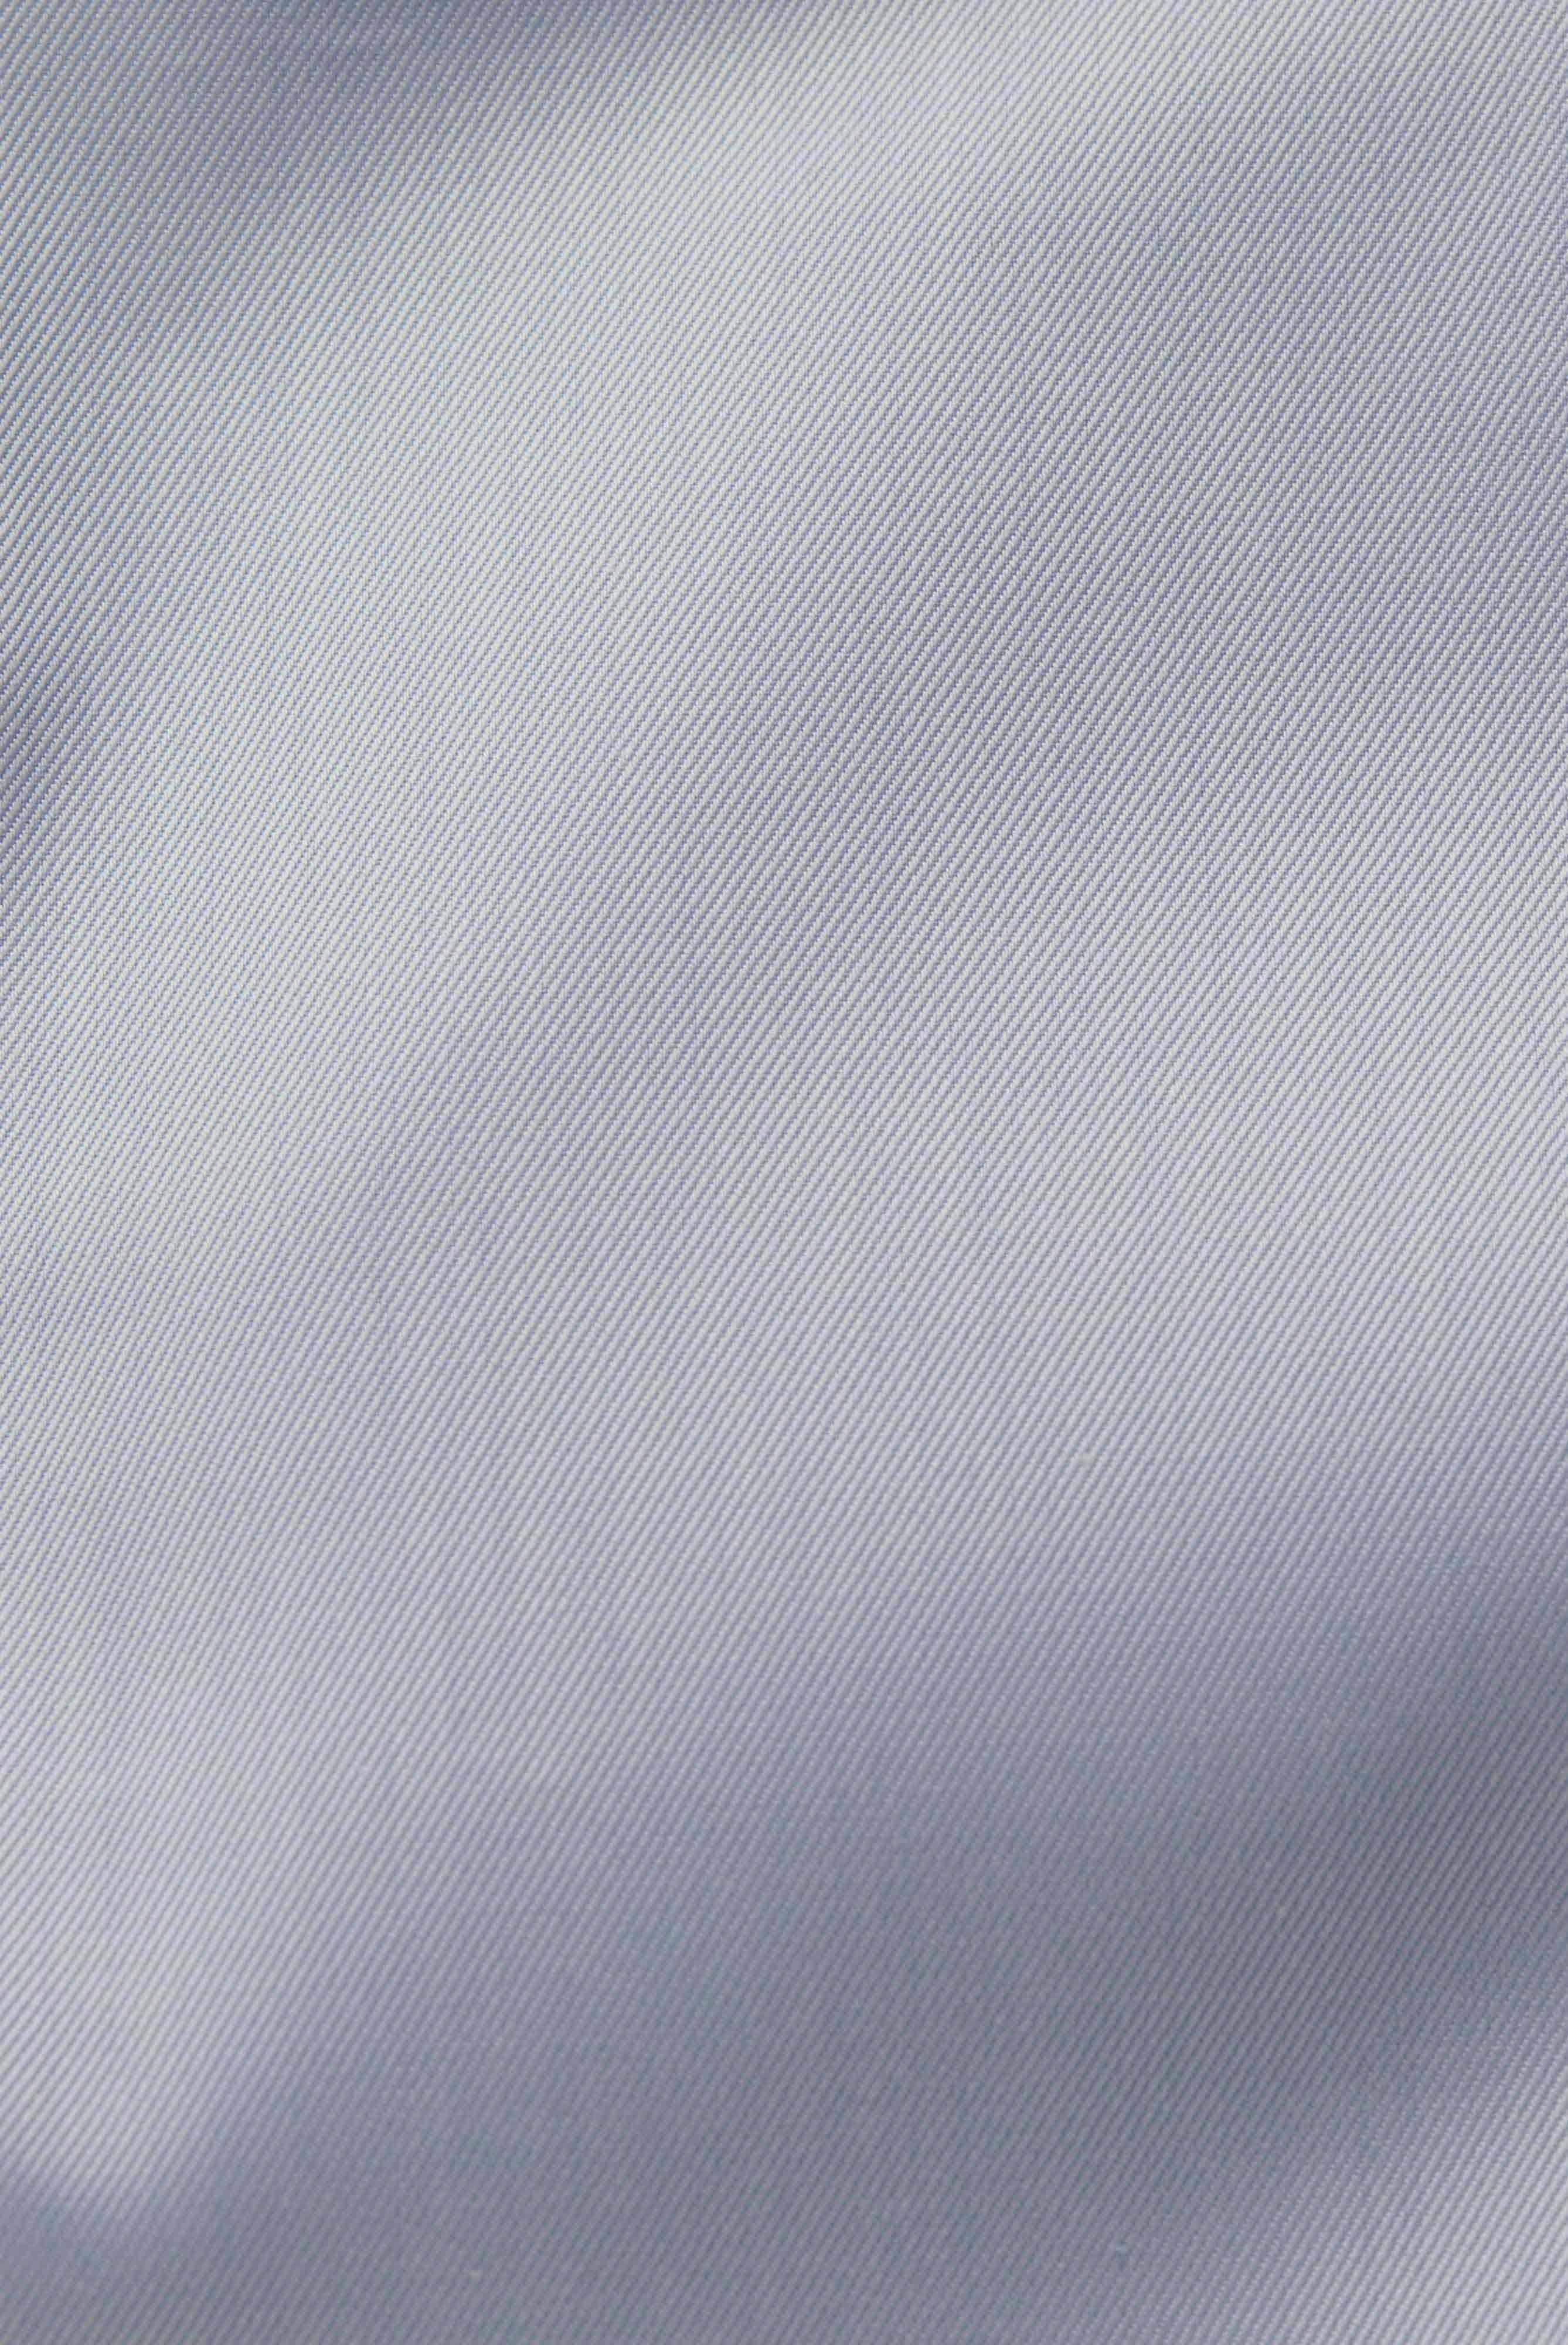 Bügelleichte Hemden+Bügelfreies Twill Hemd Comfort Fit+20.2046.BQ.132241.720.38